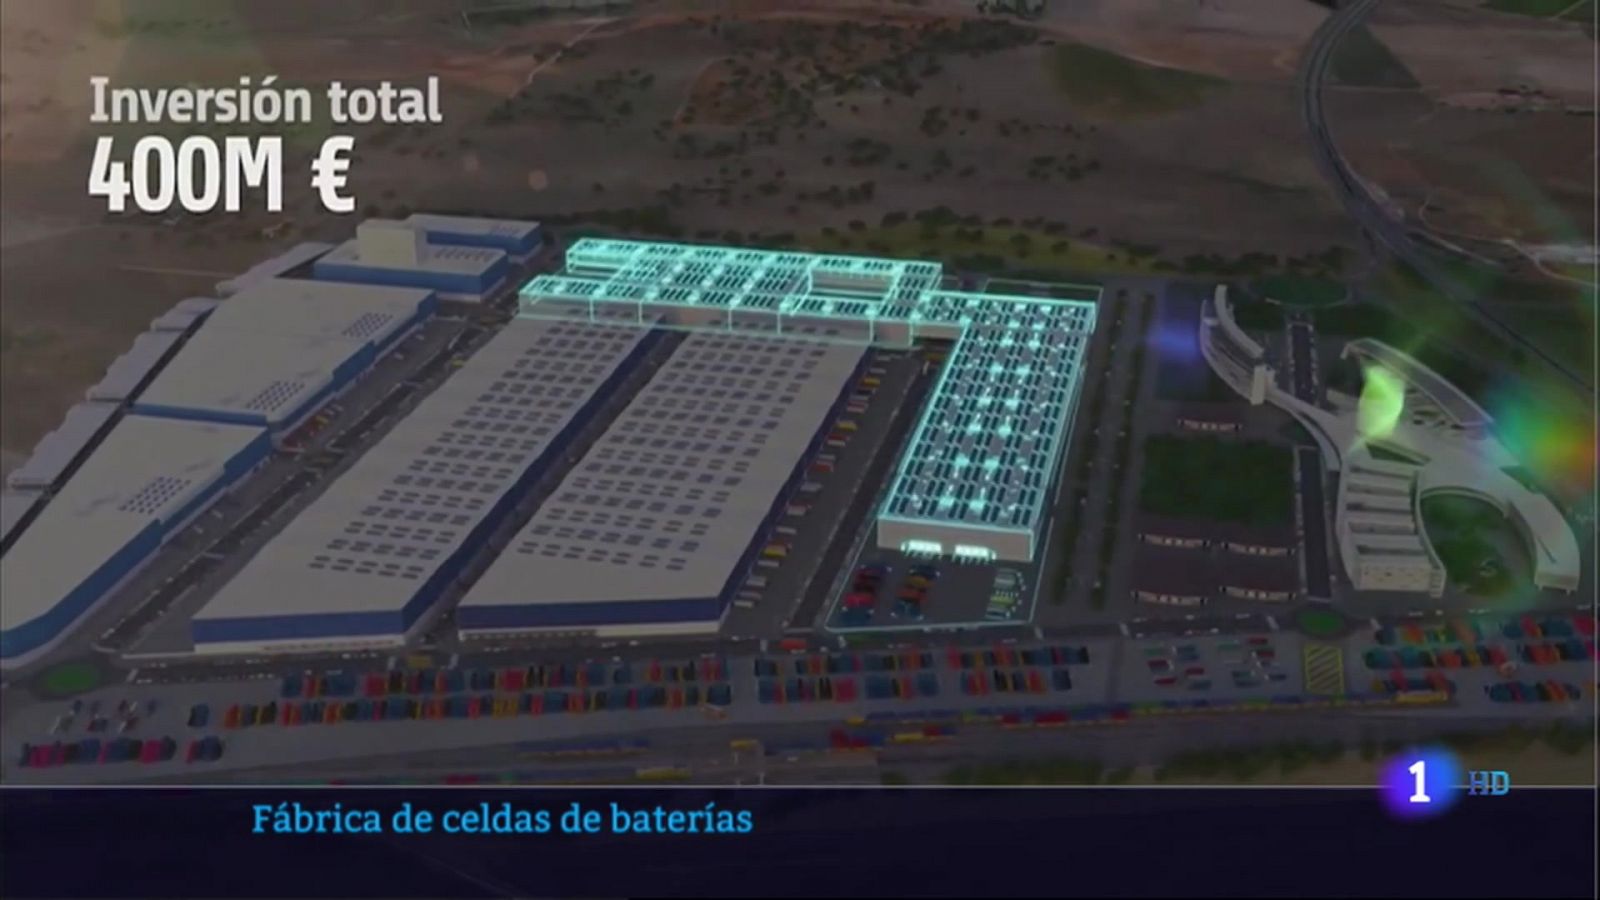 Primera fábrica de celdas de baterías del sur de Europa, en Badajoz